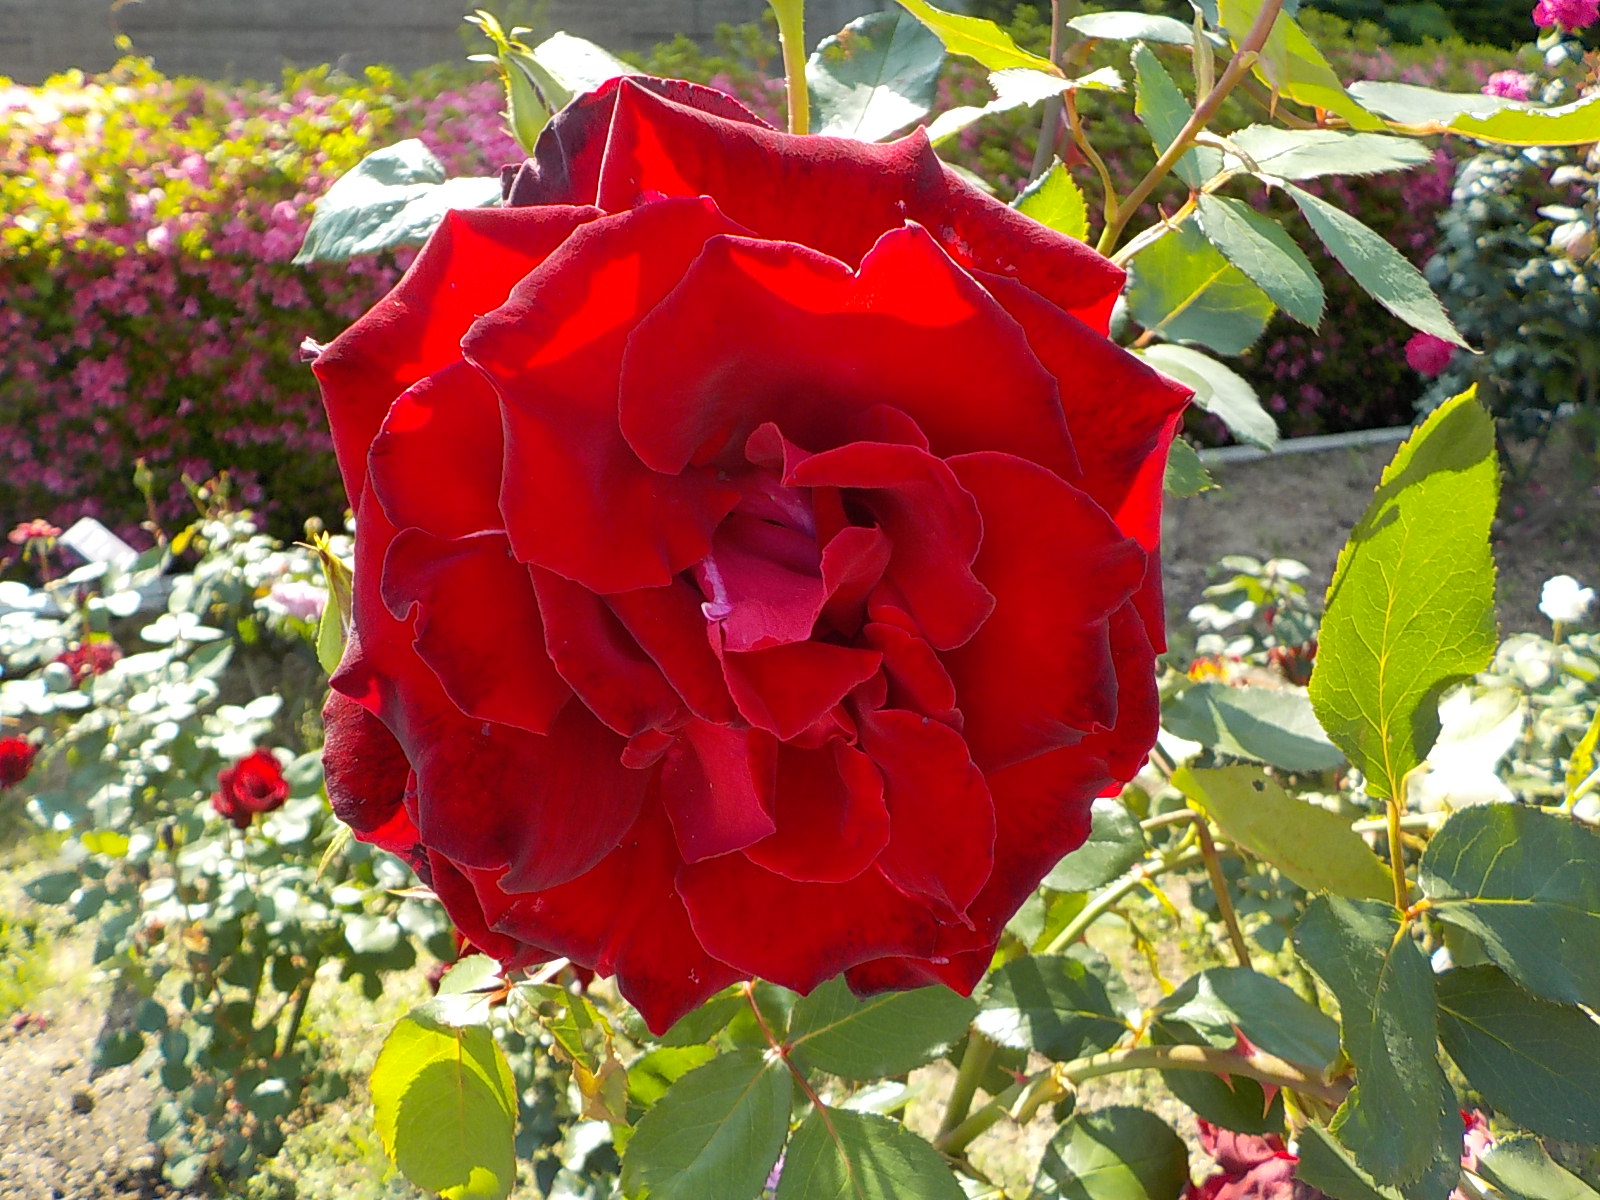 名古屋市東山動植物園 バラ園でベルサイユのばら 赤 が咲いています 近くにオスカル フランソワ 白 アンドレ グランディエ クリーム色 も咲いています 東山動植物園 植物園 バラ ベルサイユのばら T Co Ls7jboww3d Twitter